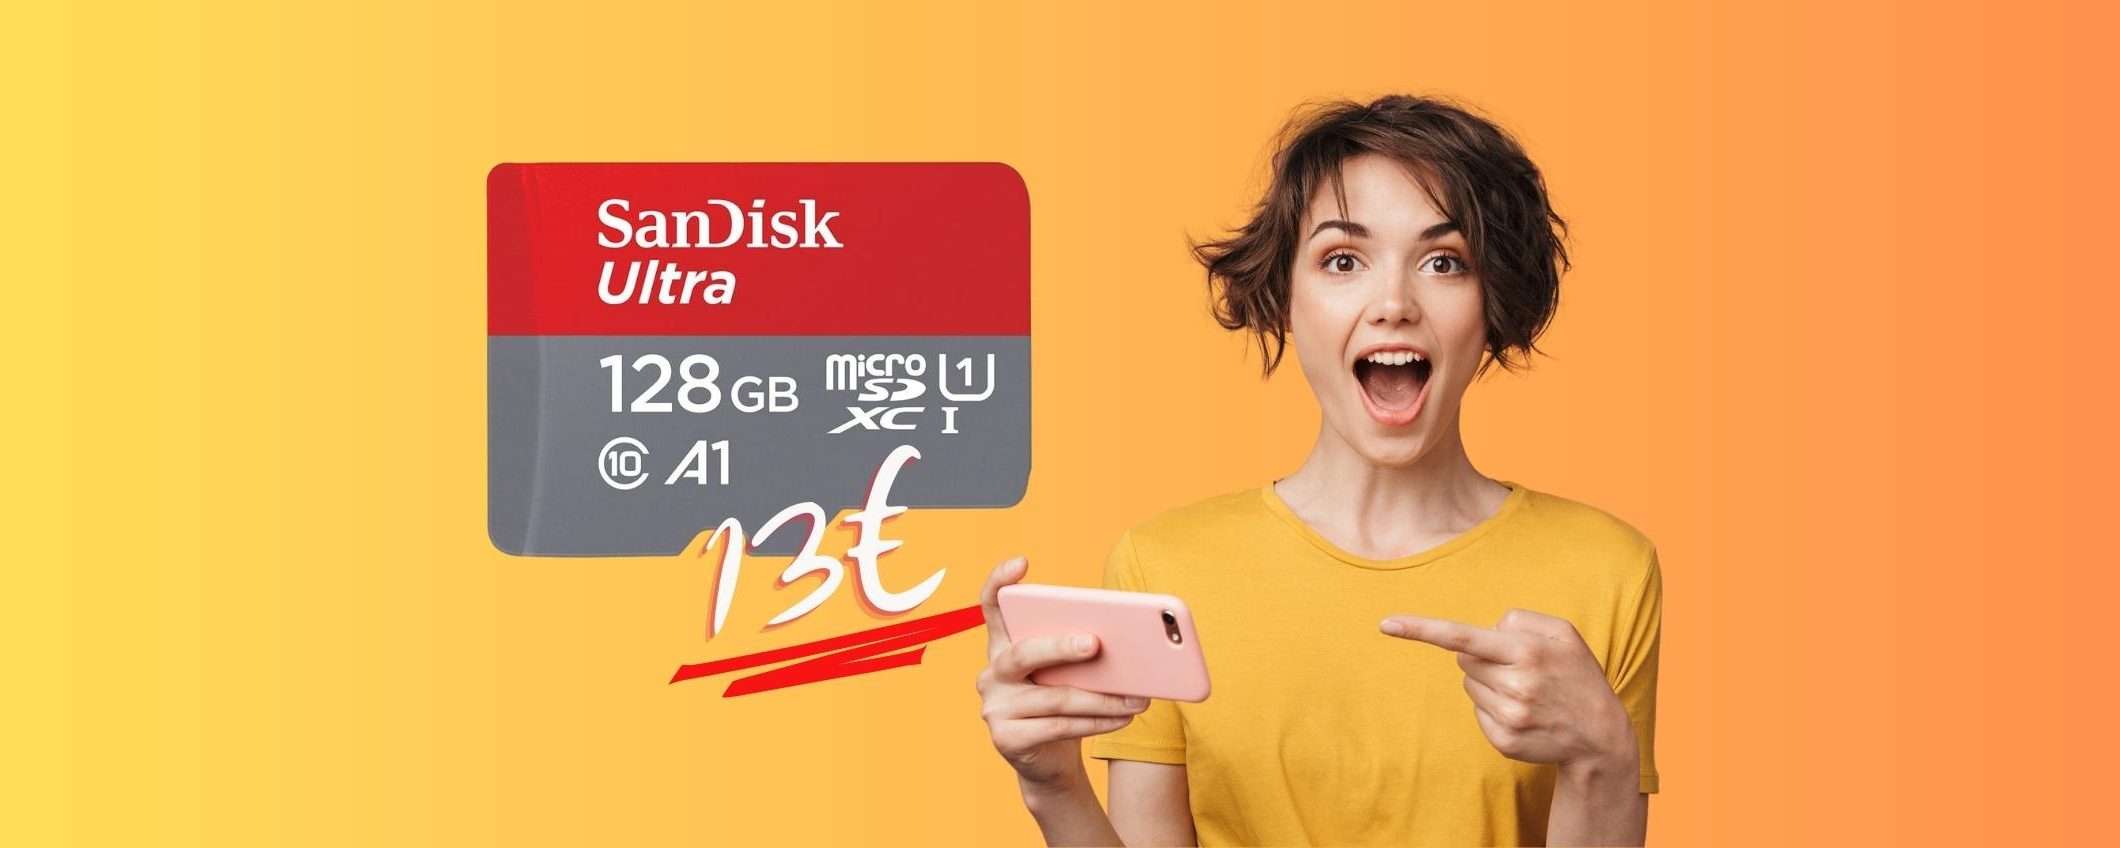 SanDisk Ultra: BOMBA Amazon per la microSD da 128 GB al 54% (13€)